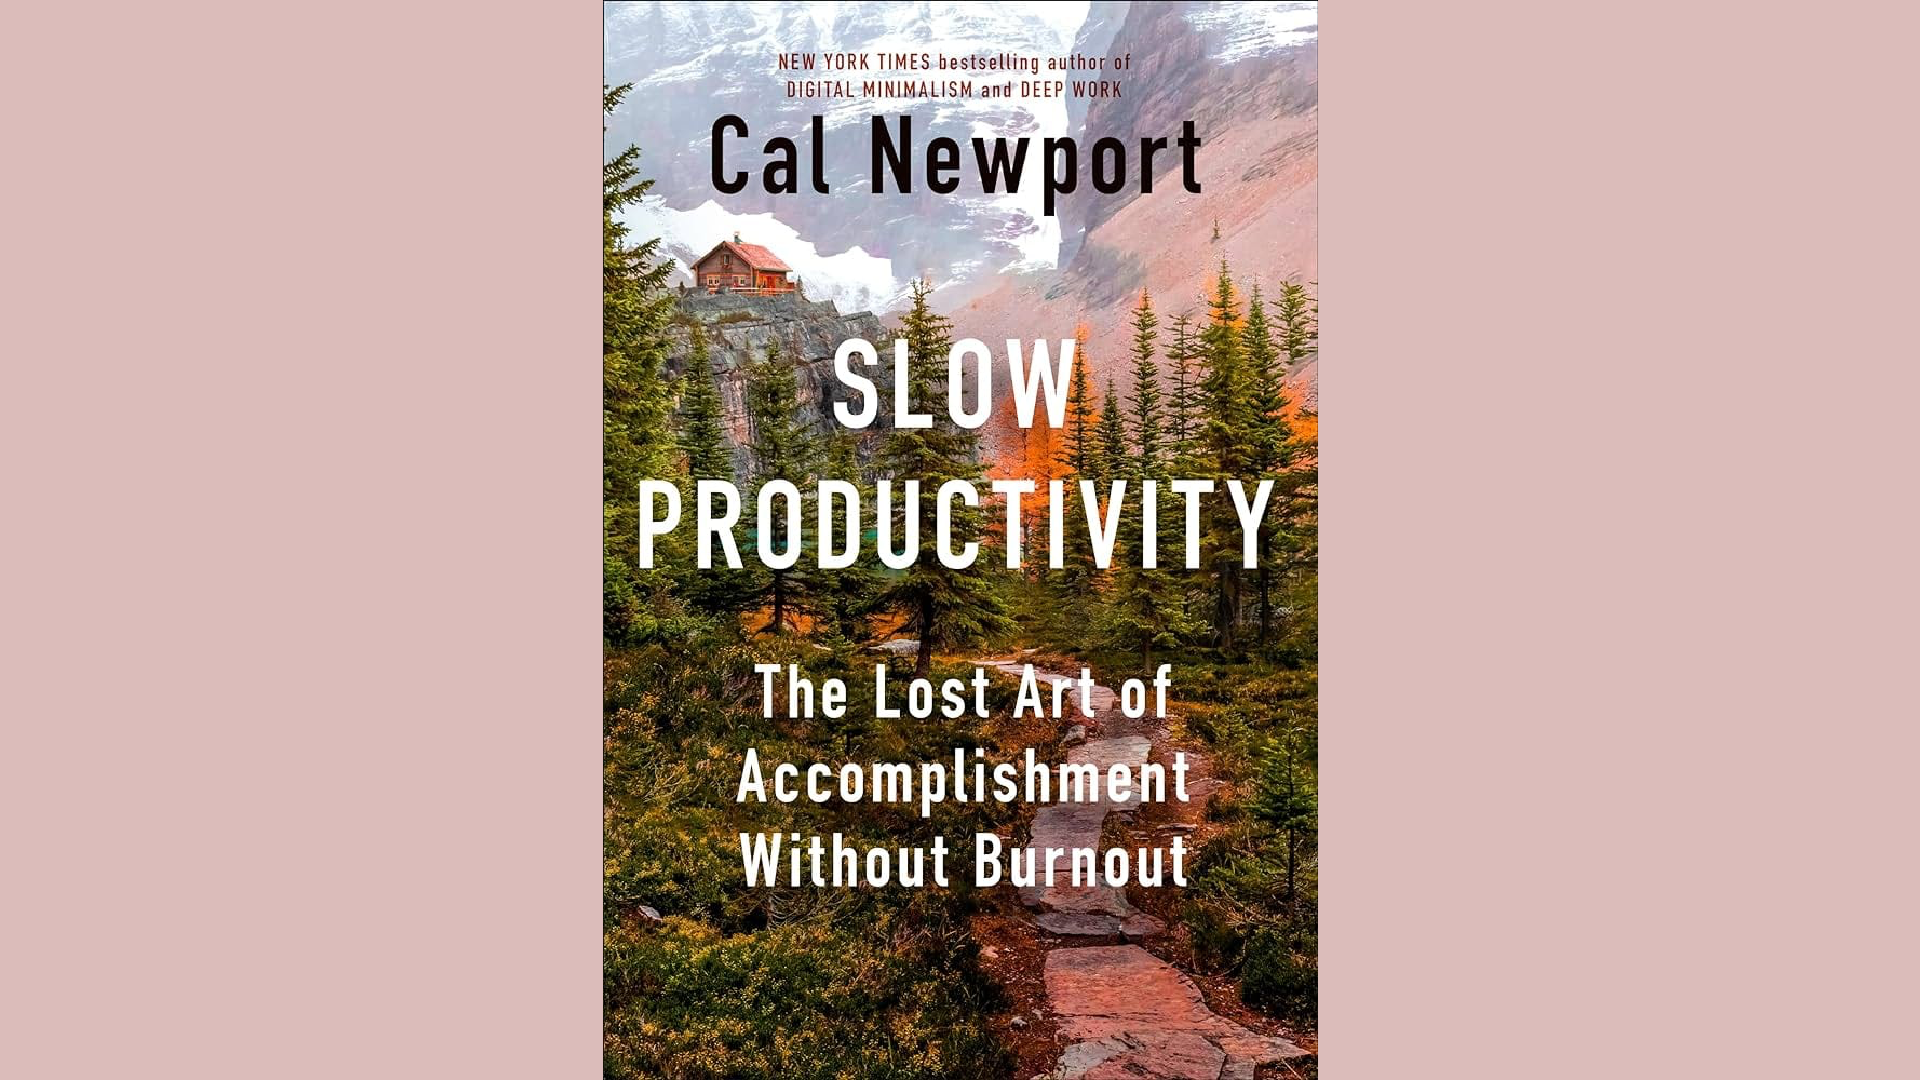 Summary: Slow Productivity by Cal Newport